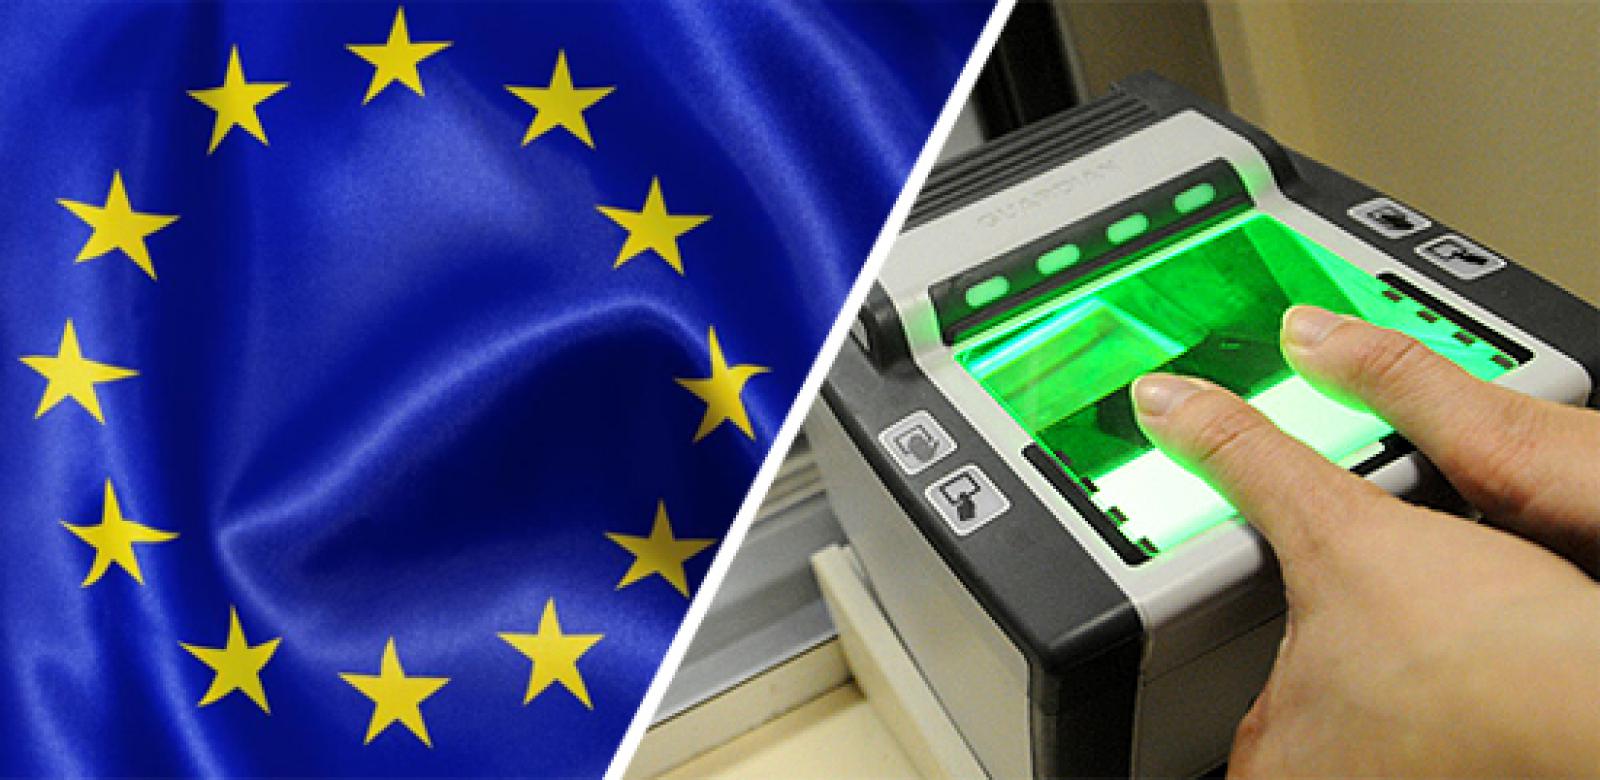 Шенгенские визы: как правильно выбрать тип визы?